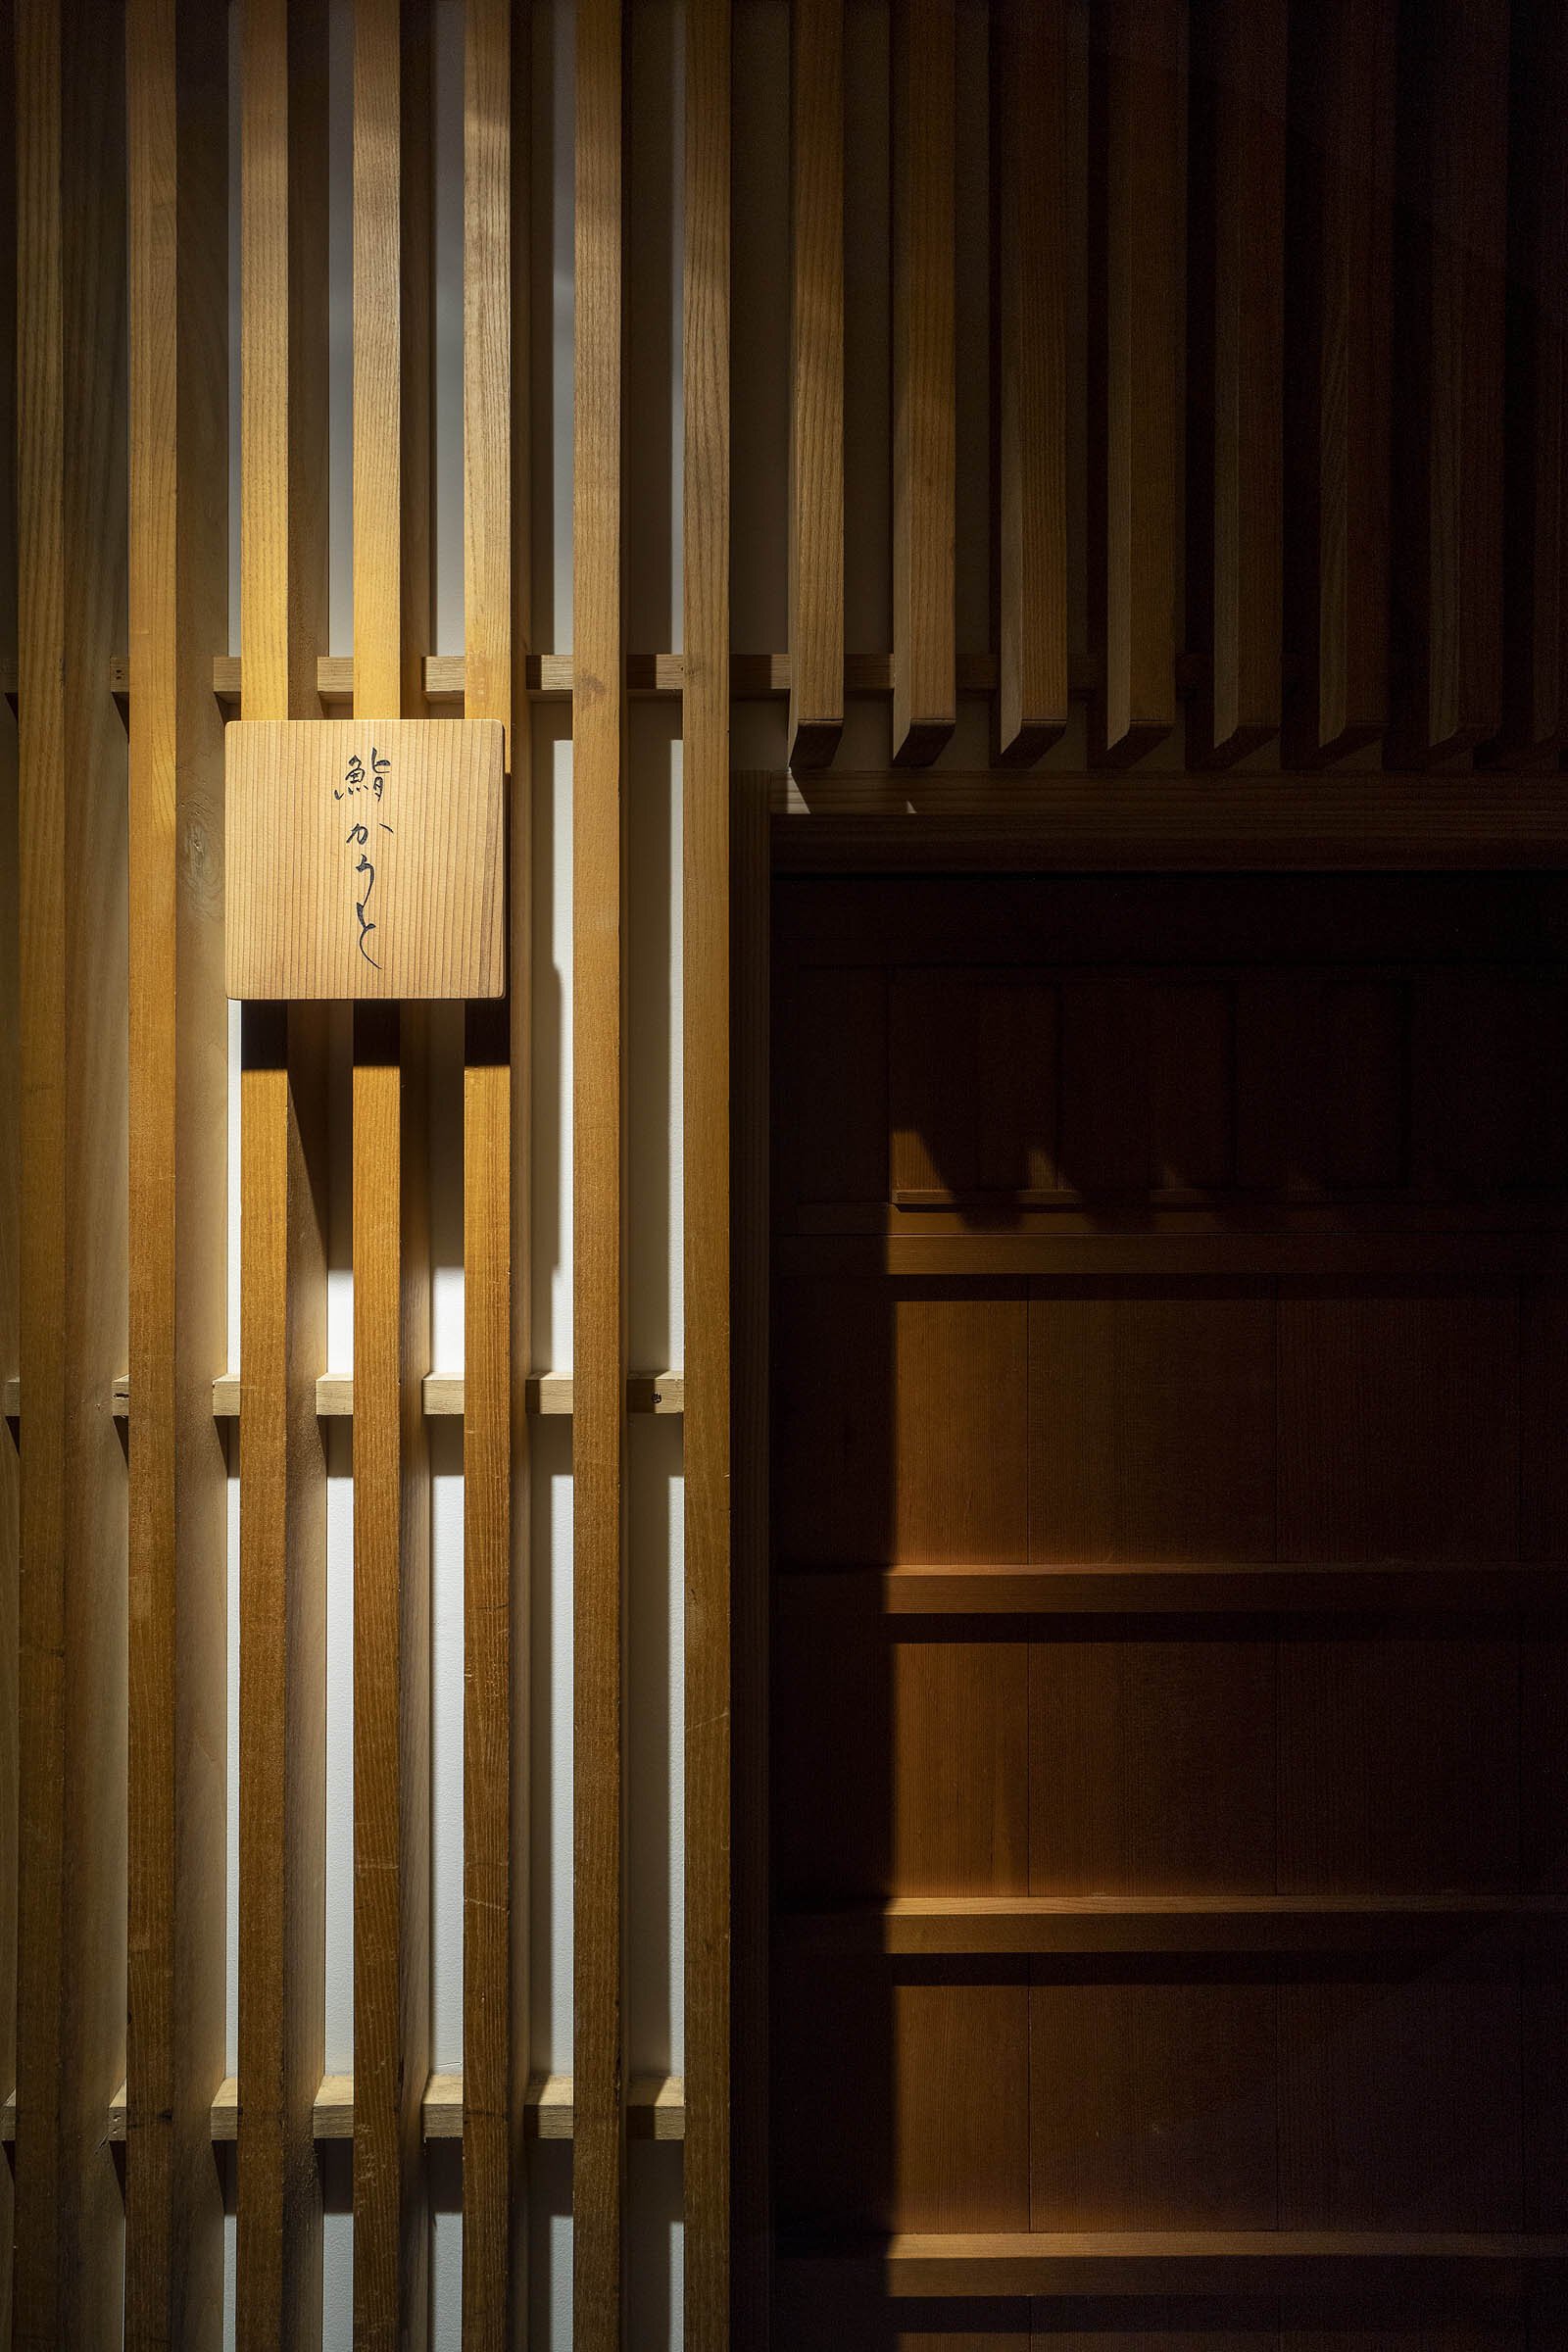  cafe co.の森井良幸がインテリアデザインを手掛けた「鮨 かうと」のエントランス扉 